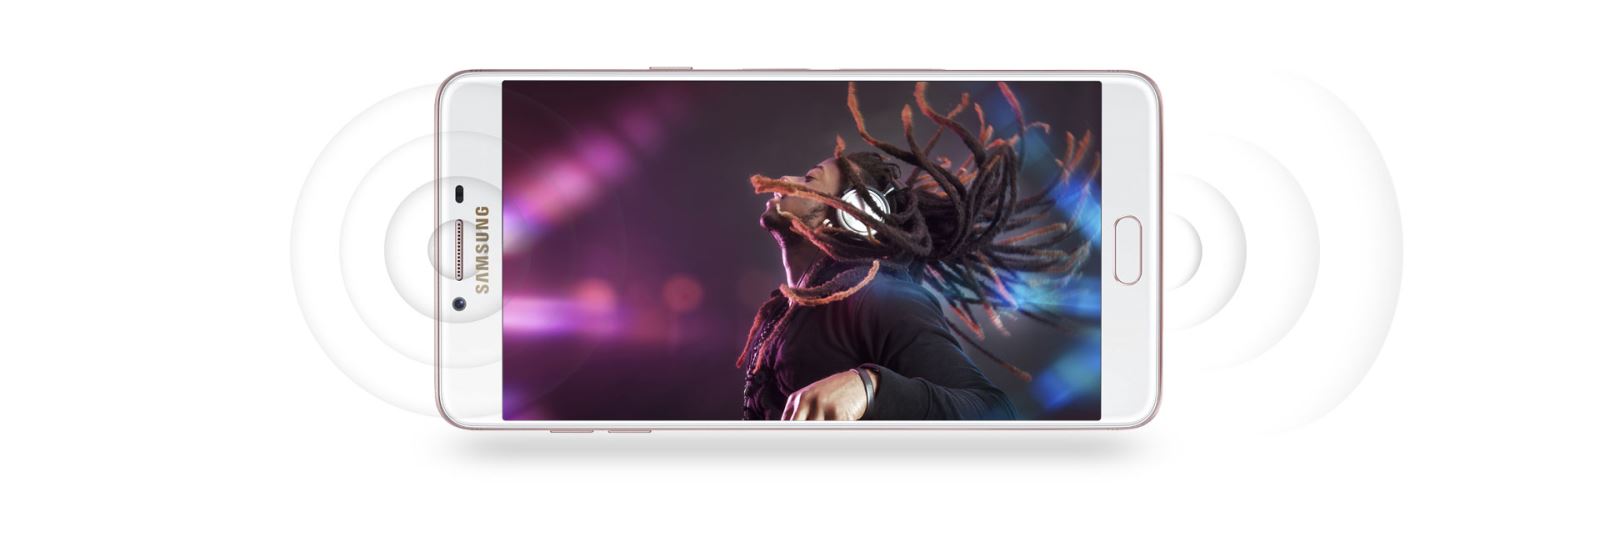 Galaxy C9 Pro chính thức ra mắt, chiếc điện thoại đầu tiên của Samsung có 6GB RAM